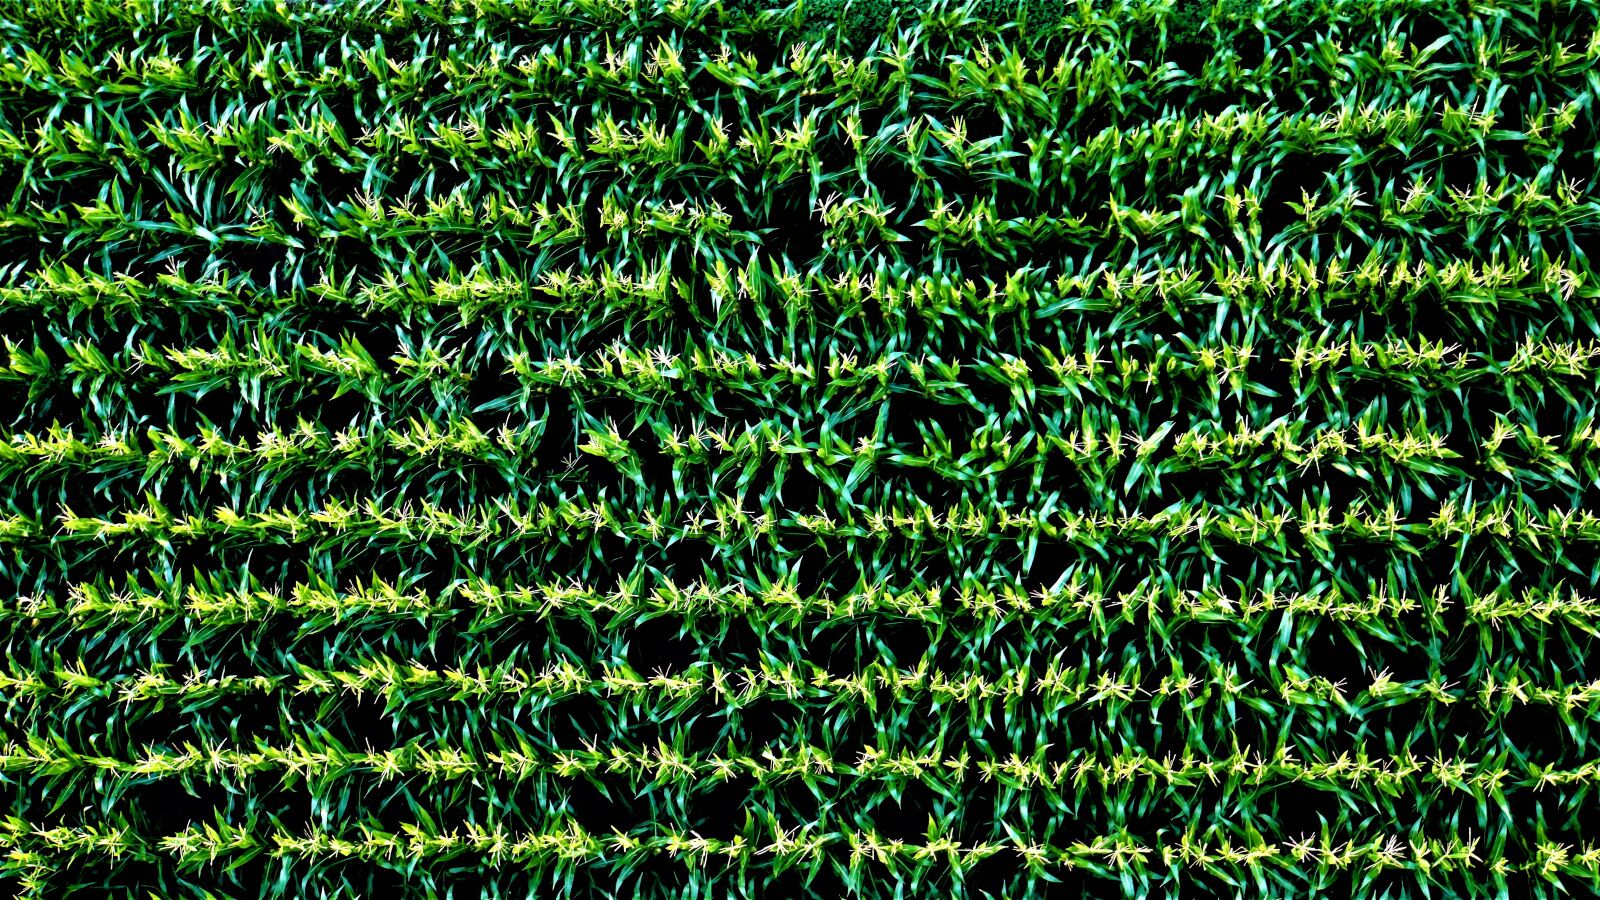 Sony a6000 sample photo. Cornfield, harvest, pattern photography